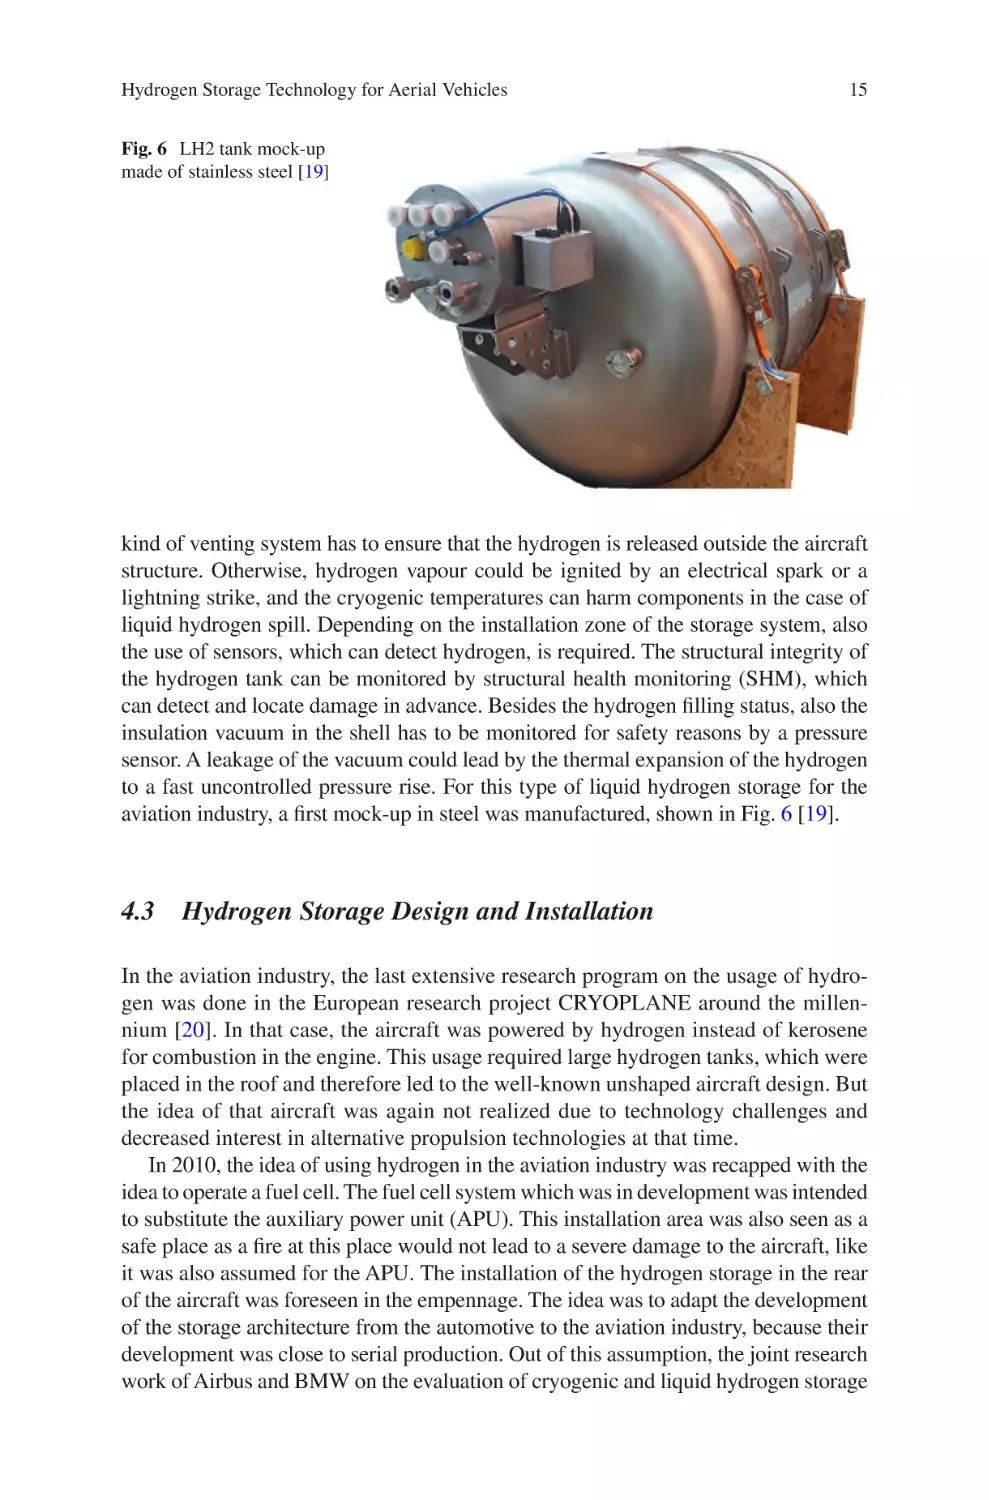 4.3 Hydrogen Storage Design and Installation